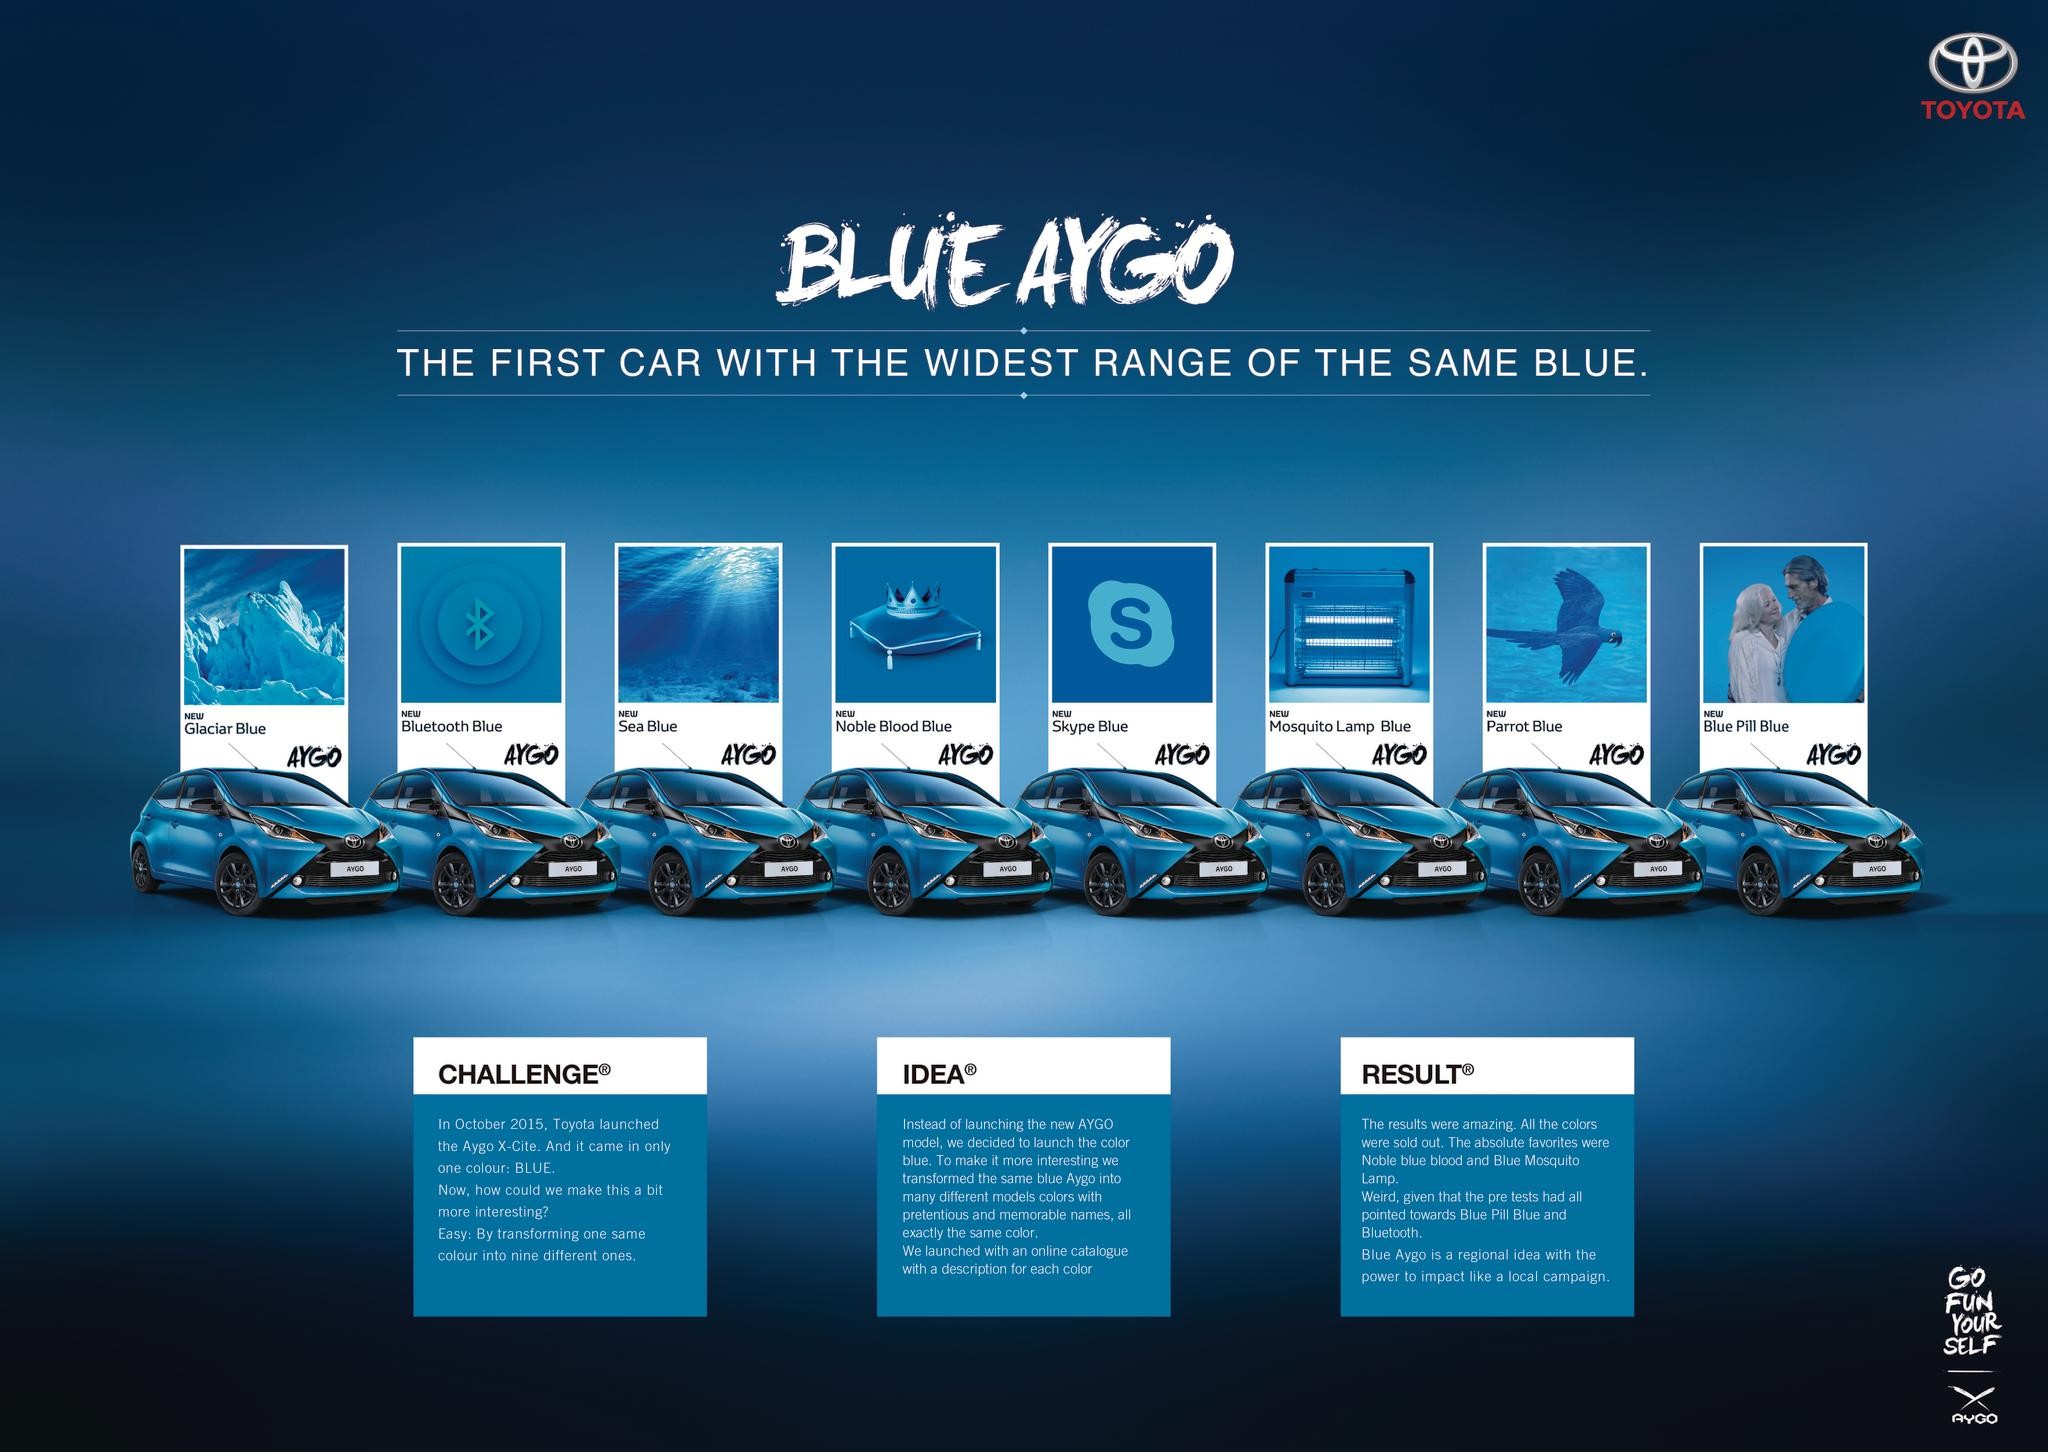 Blue Aygo